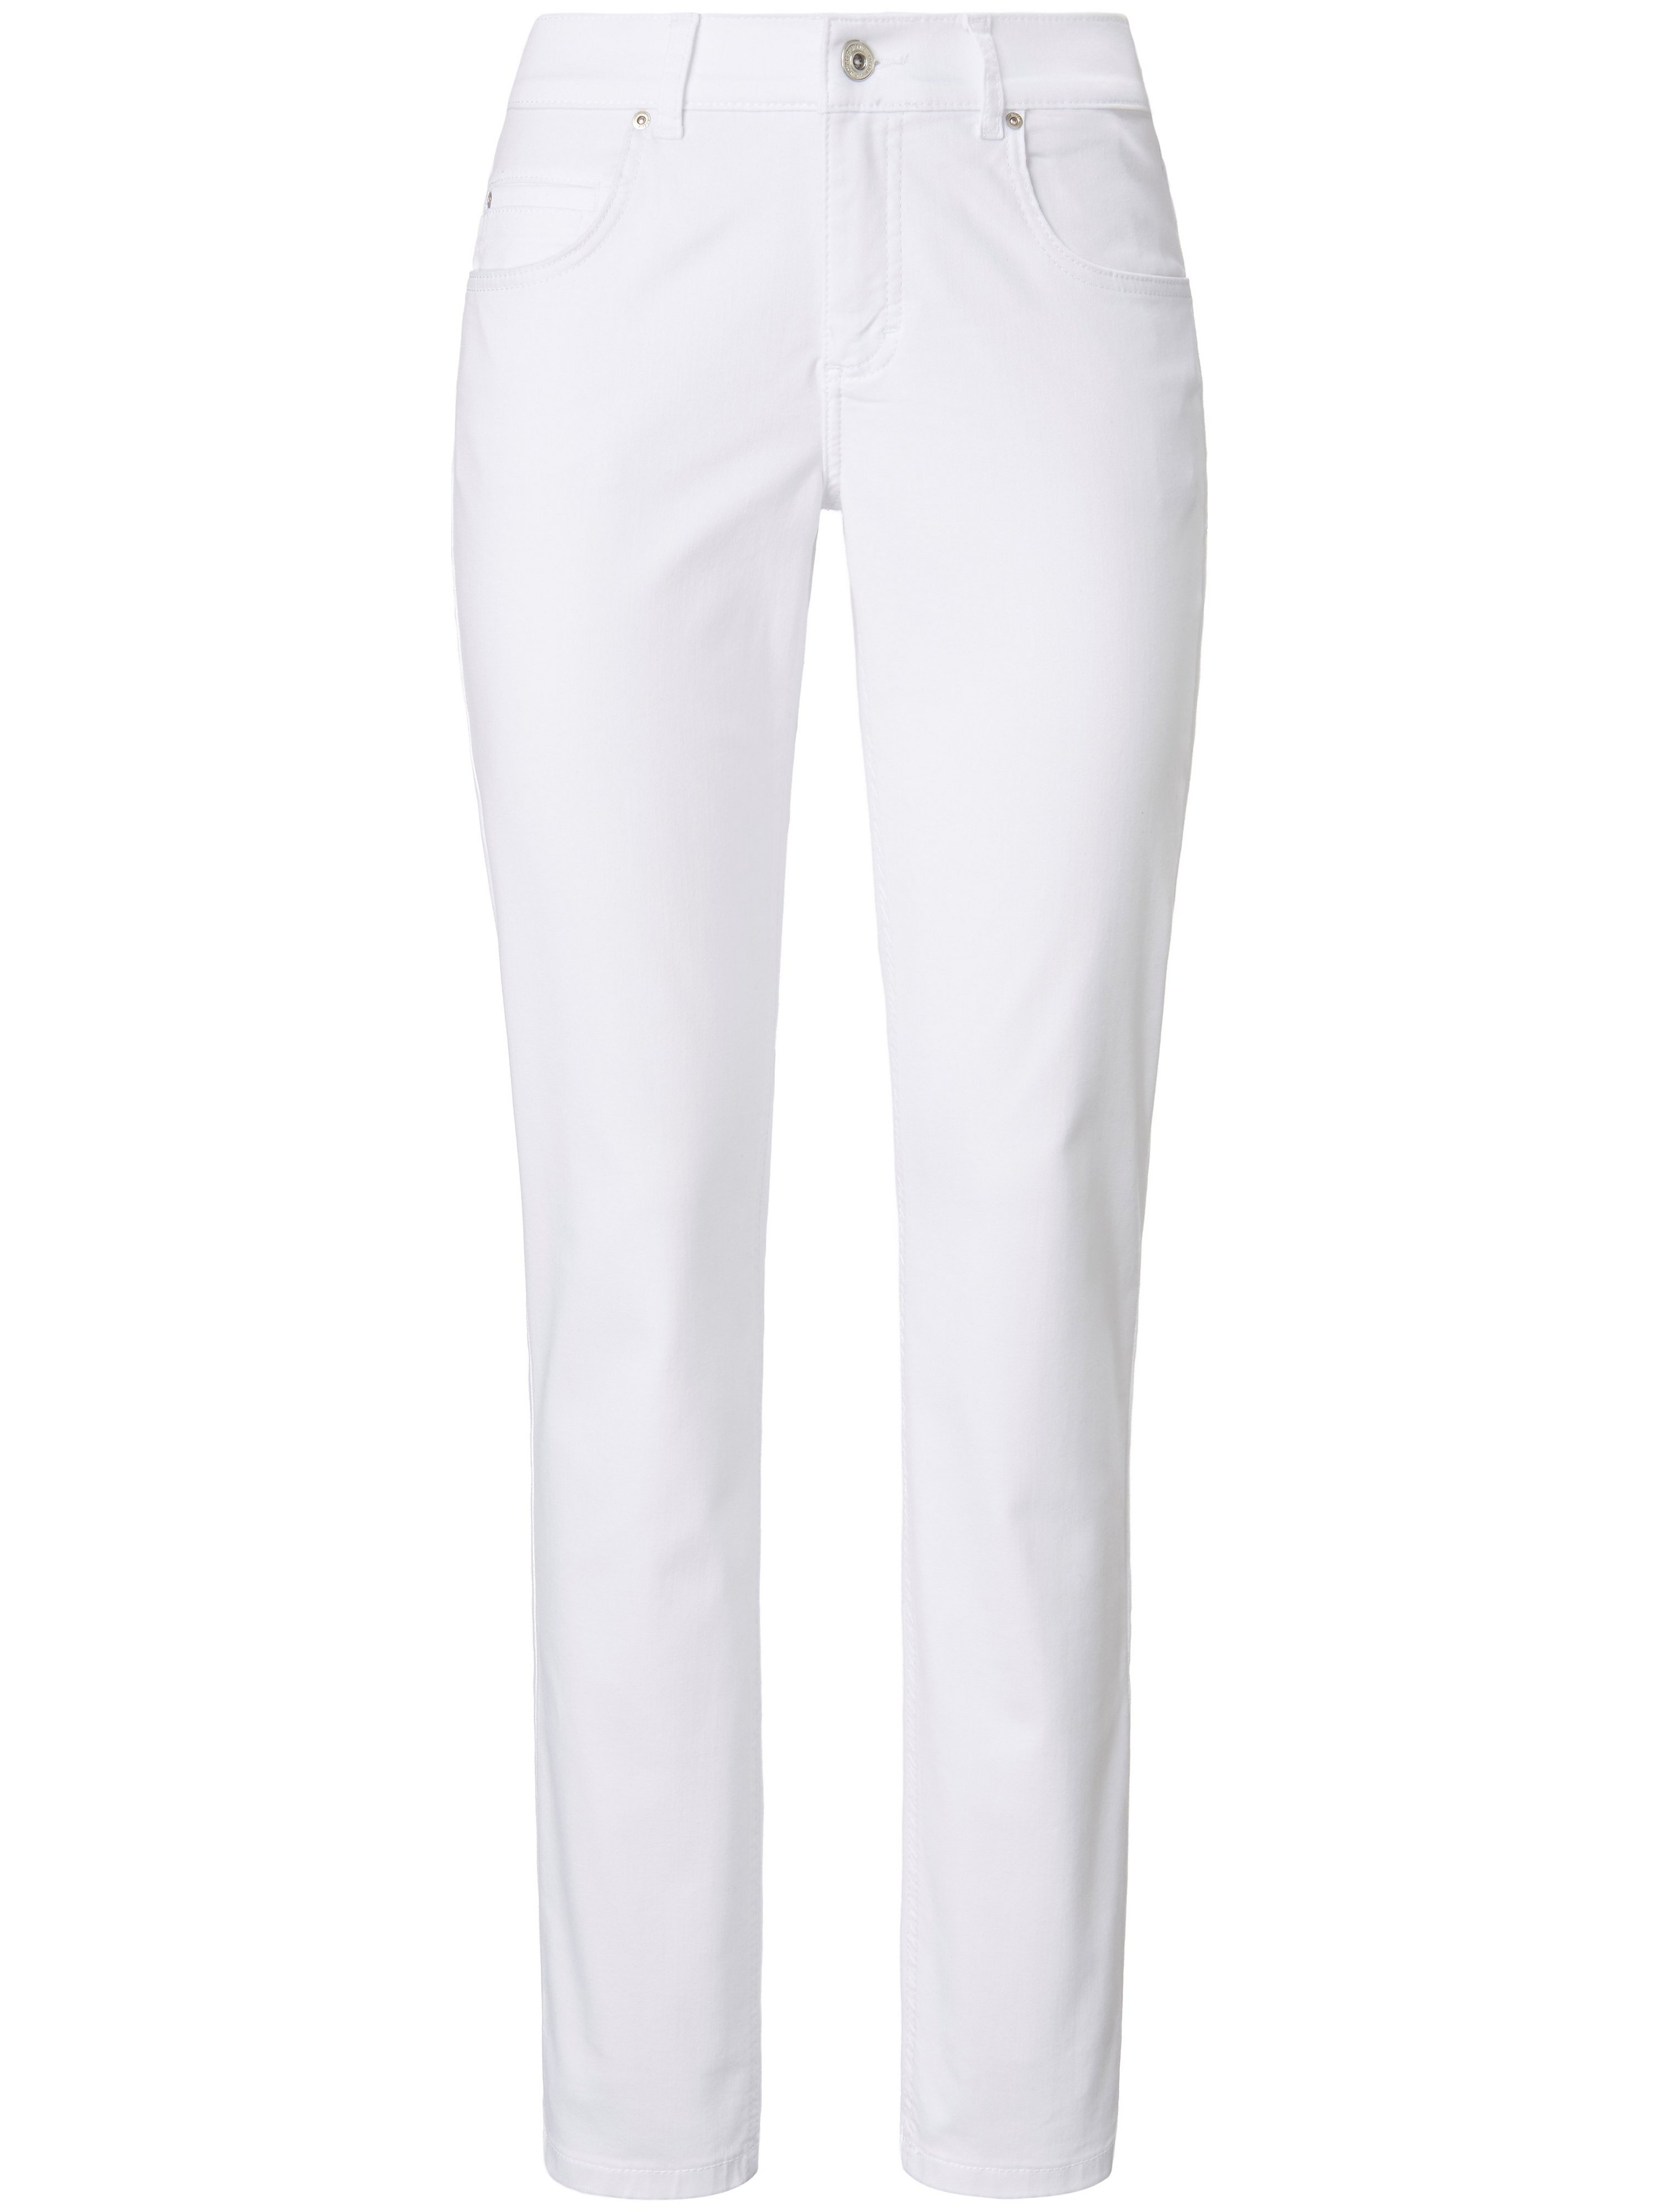 Le jean Regular Fit modèle ­Cici  ANGELS blanc taille 20